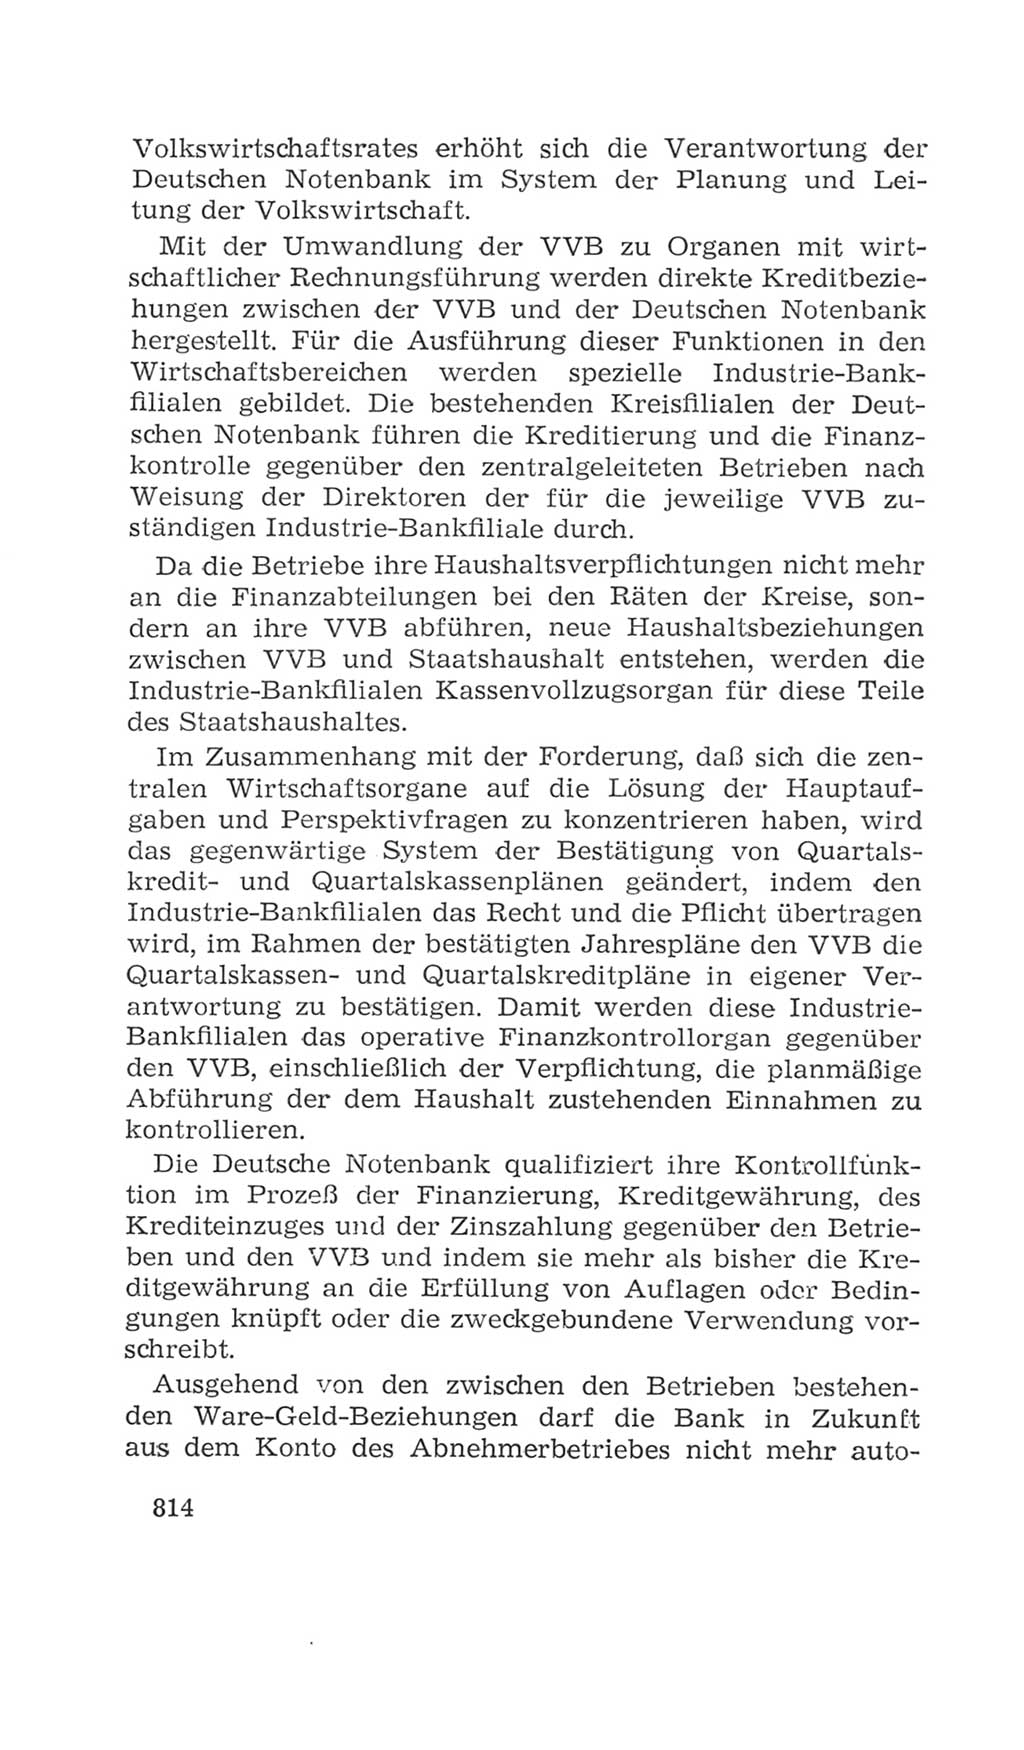 Volkskammer (VK) der Deutschen Demokratischen Republik (DDR), 4. Wahlperiode 1963-1967, Seite 814 (VK. DDR 4. WP. 1963-1967, S. 814)